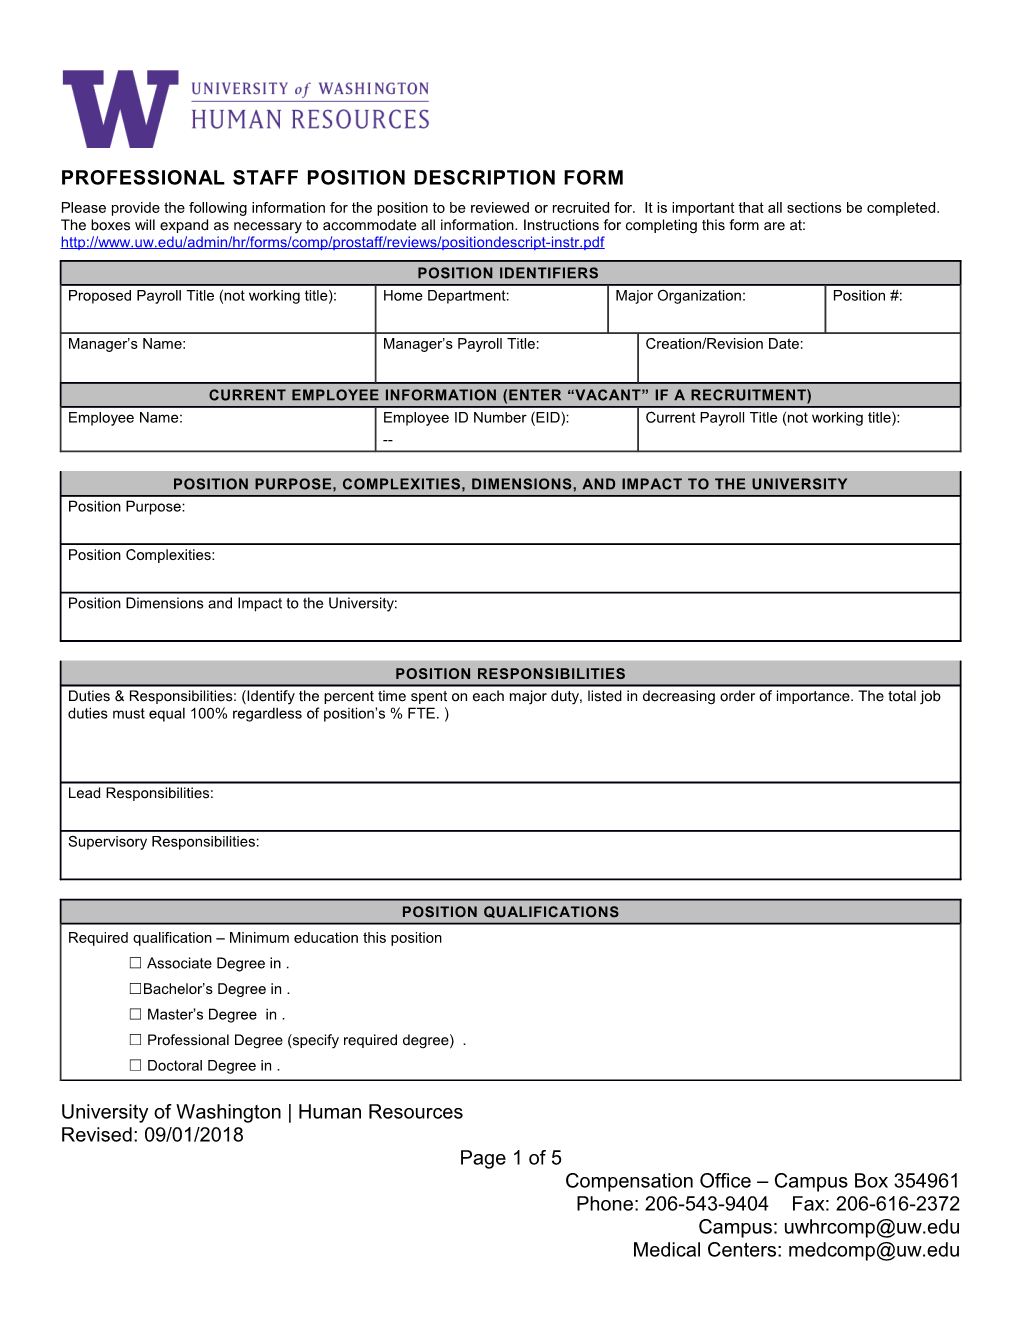 Professional Staff Position Description Form